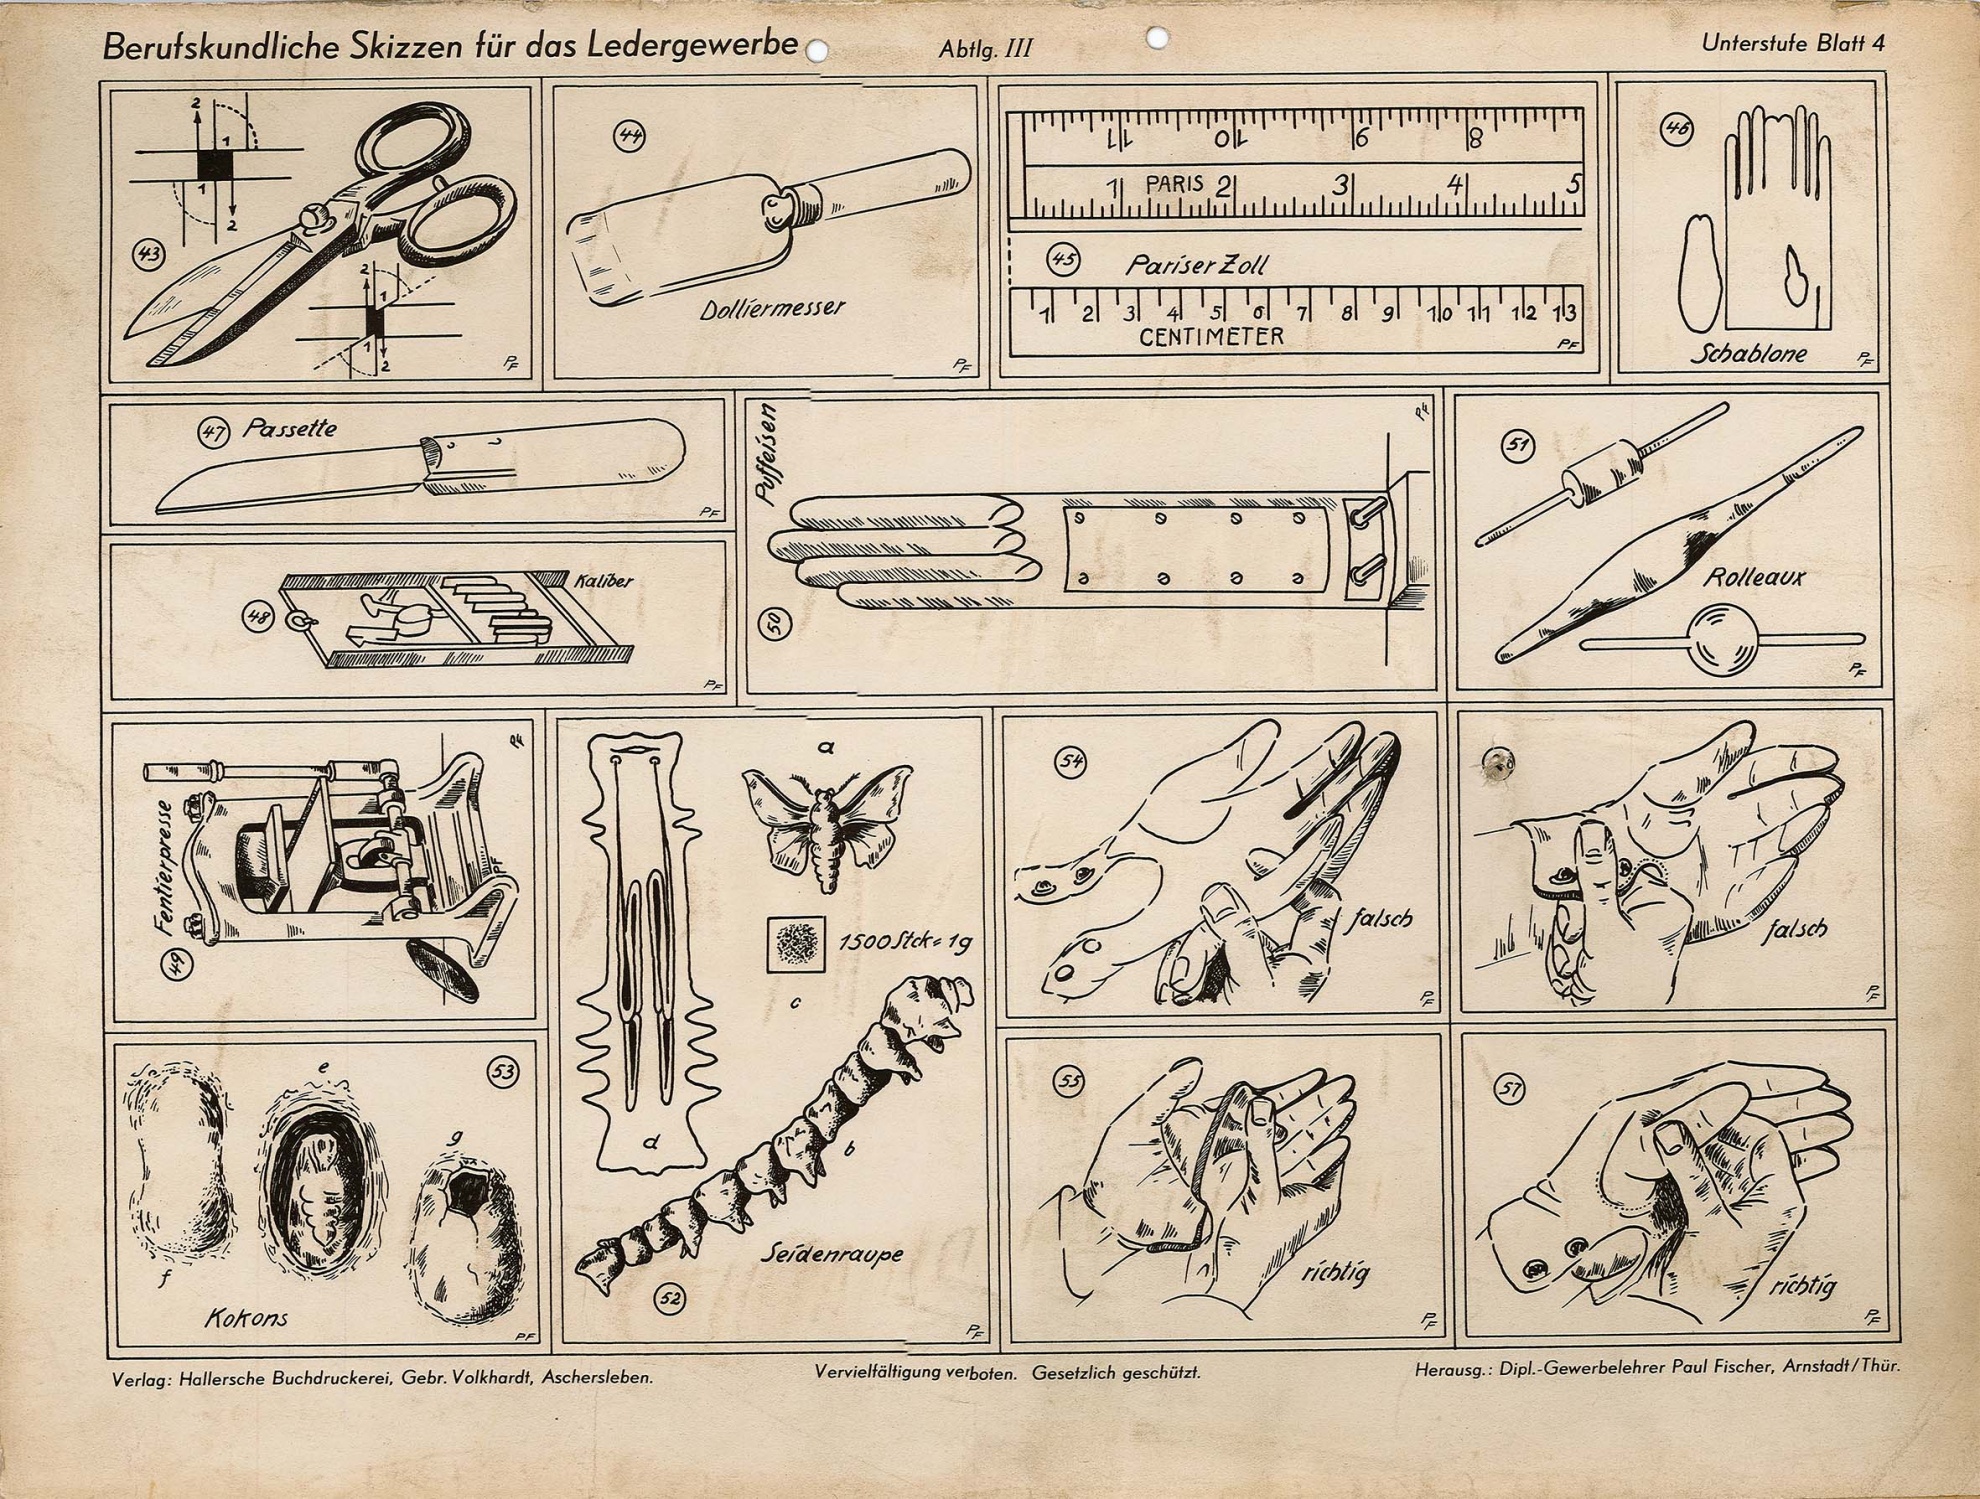 Berufskundliche Skizze für das Ledergewerbe - Unterstufe Blatt 4 (Museum Wolmirstedt RR-F)